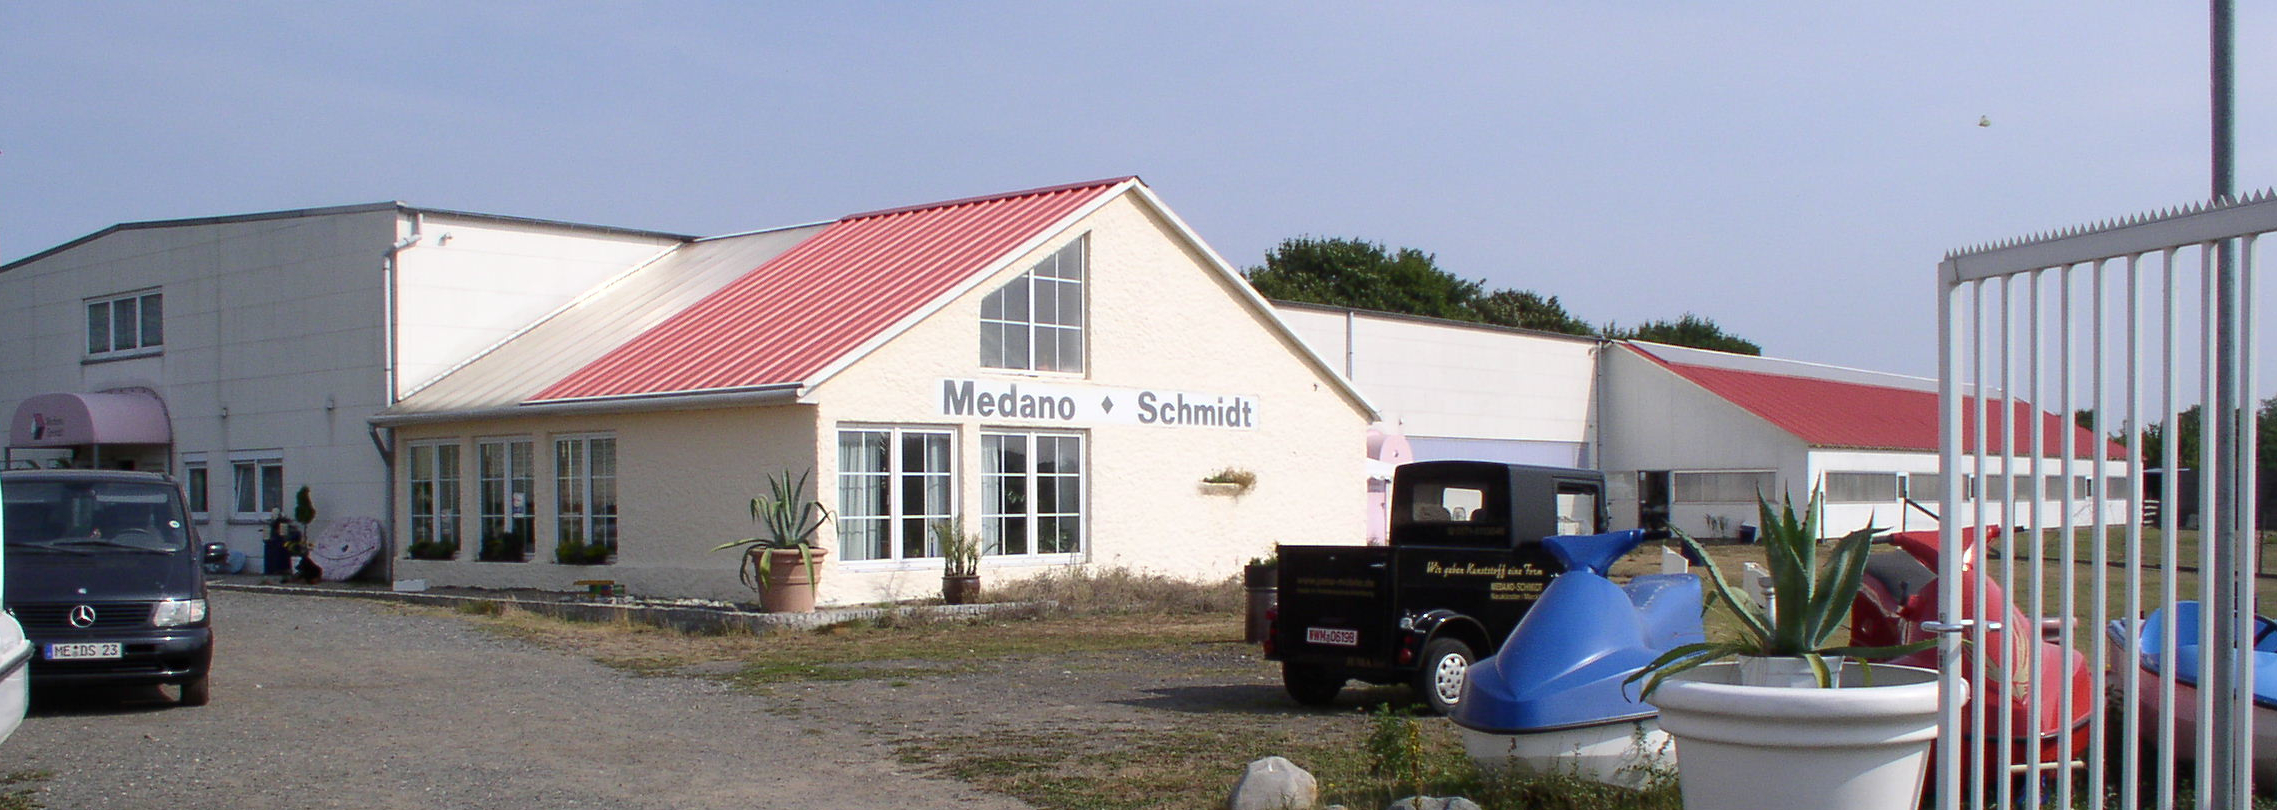 Medano-Schmidt